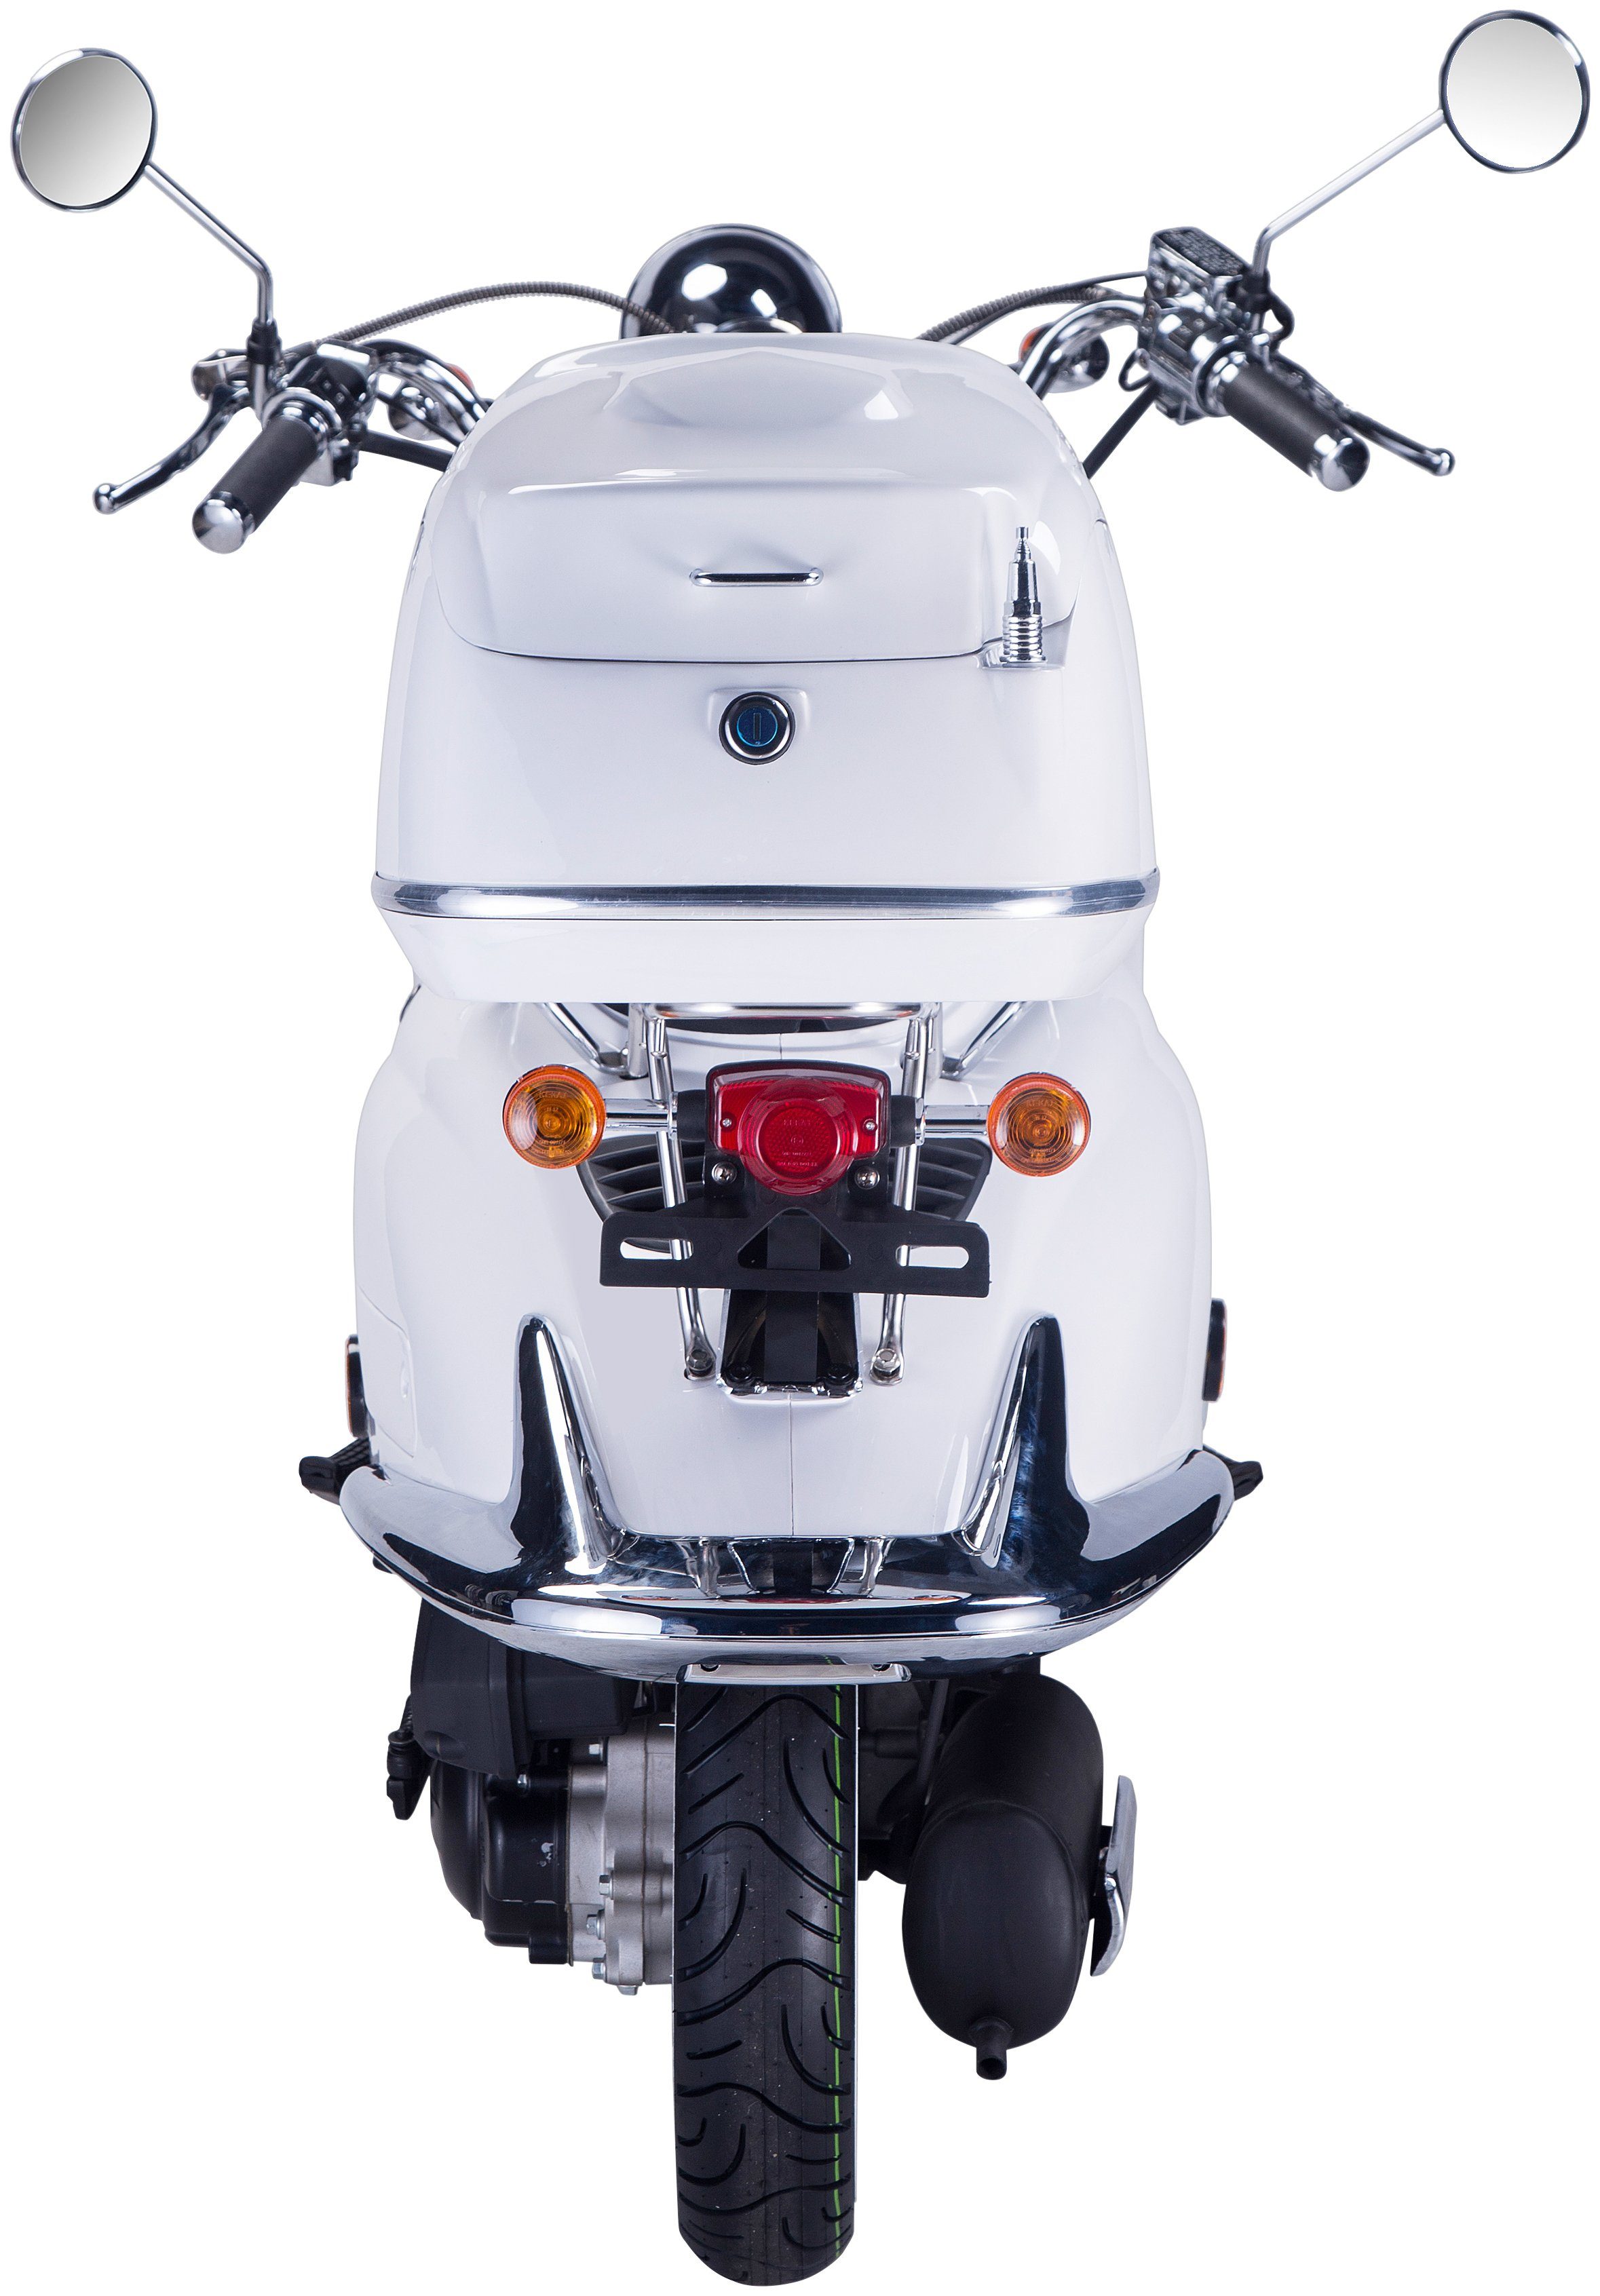 GT UNION Motorroller km/h, 85 125 Topcase Euro (Set), mit 5, weiß ccm, Strada